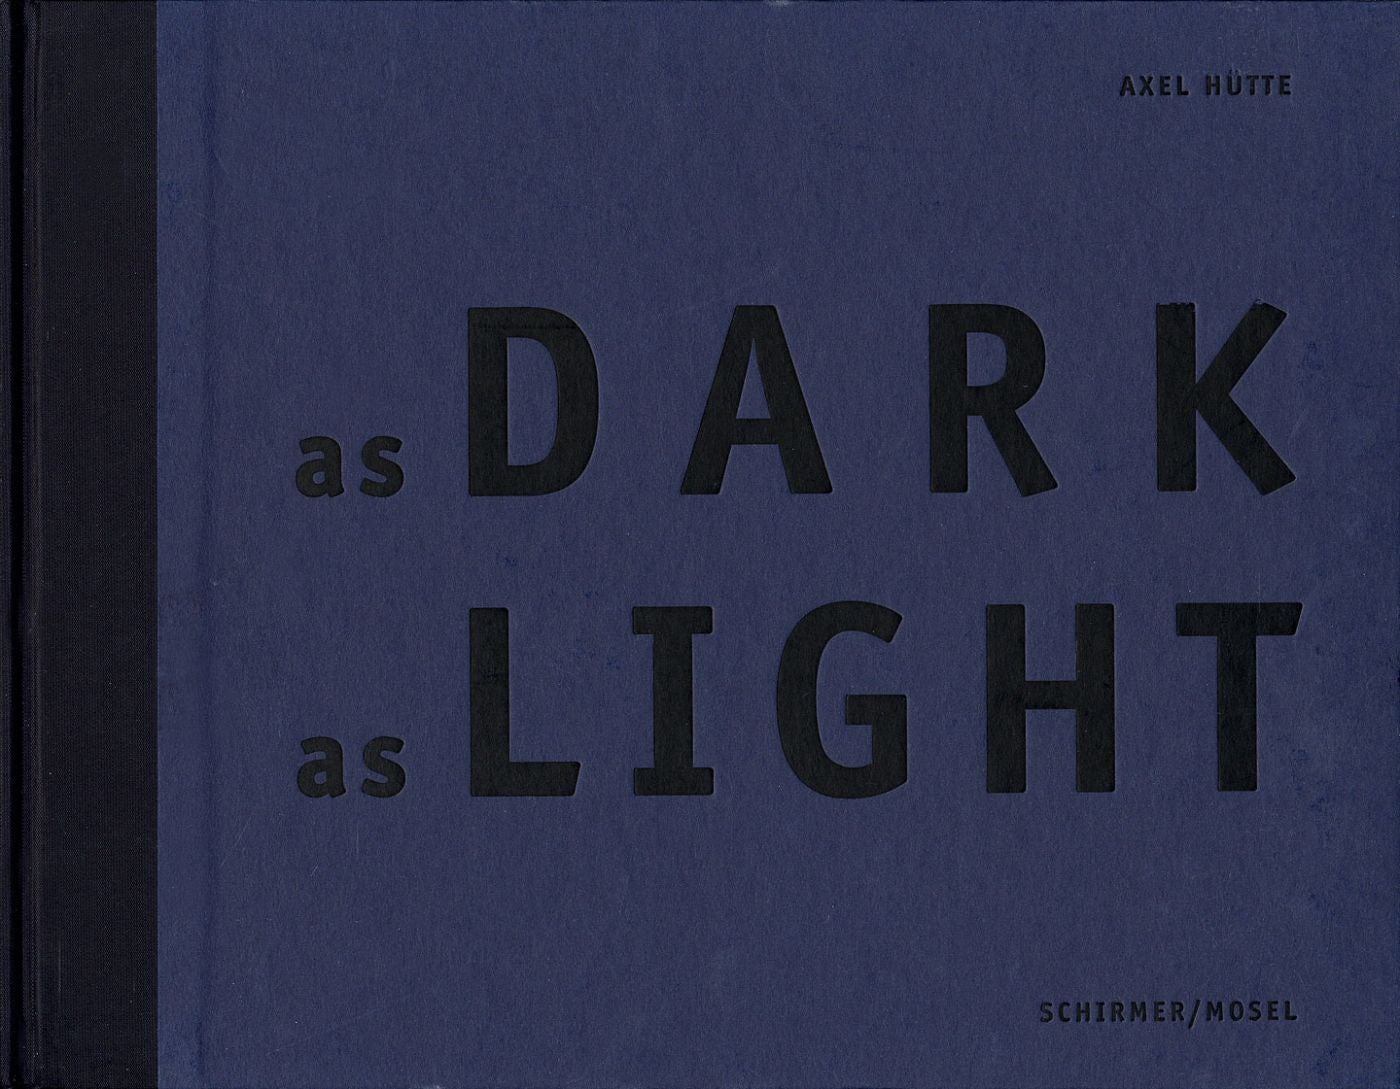 Axel Hütte: As Dark as Light [SIGNED]